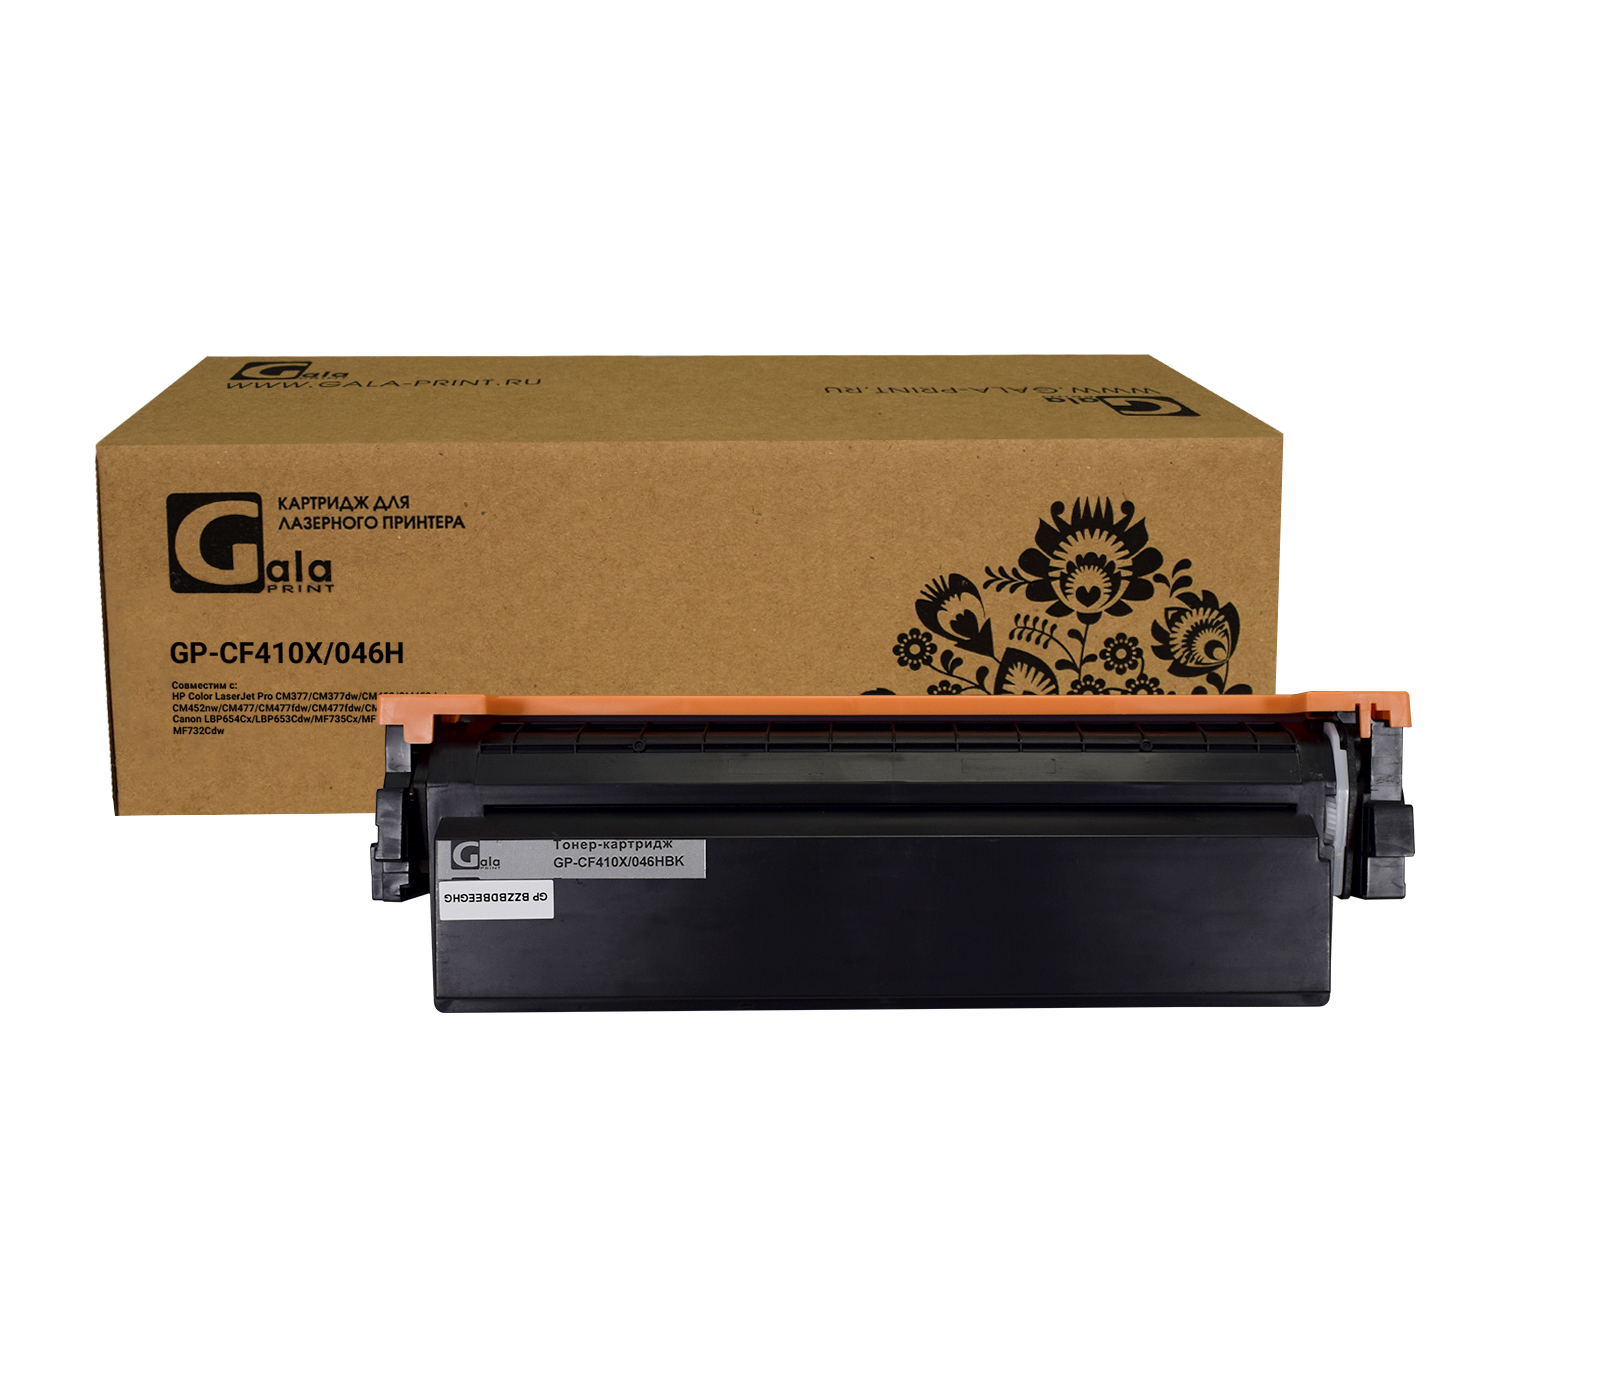 Картридж GP-CF410X №410X для принтеров HP LaserJet Pro M477/M452 Black 6500 копий GalaPrint